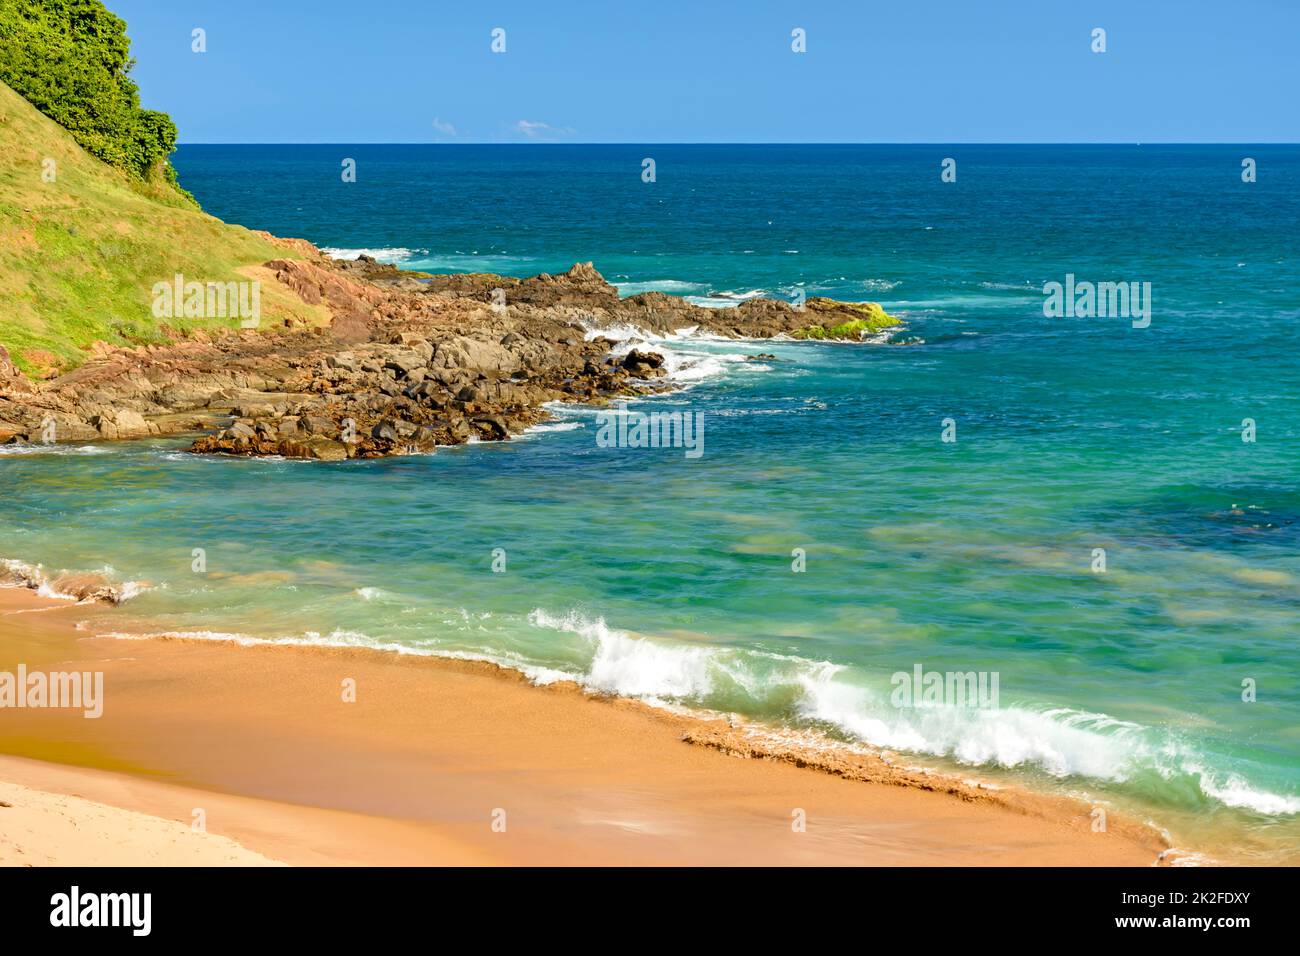 Spiaggia tropicale deserta con belle acque cristalline Foto Stock